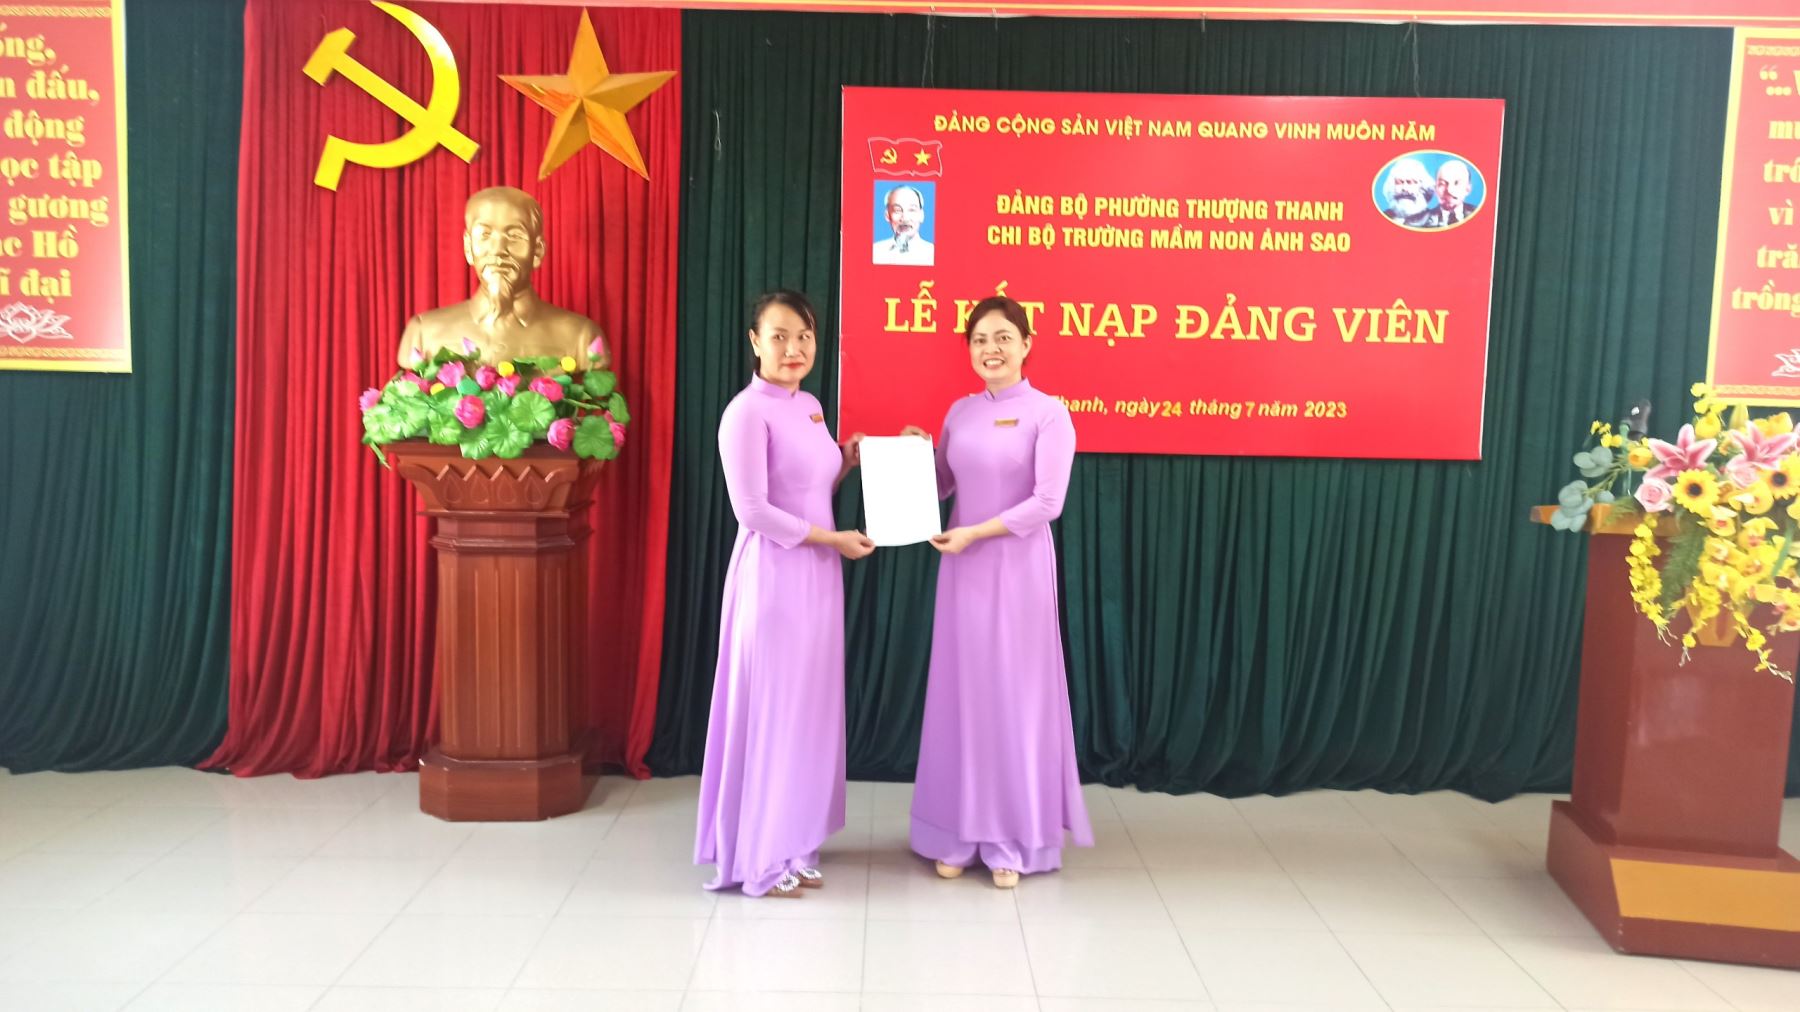 Lễ kết nạp Đảng viên mới 2 quần chúng ưu tú Nguyễn Thị Thuỷ, Nguyễn Thị Hồng Nhung năm 2022 - 2023